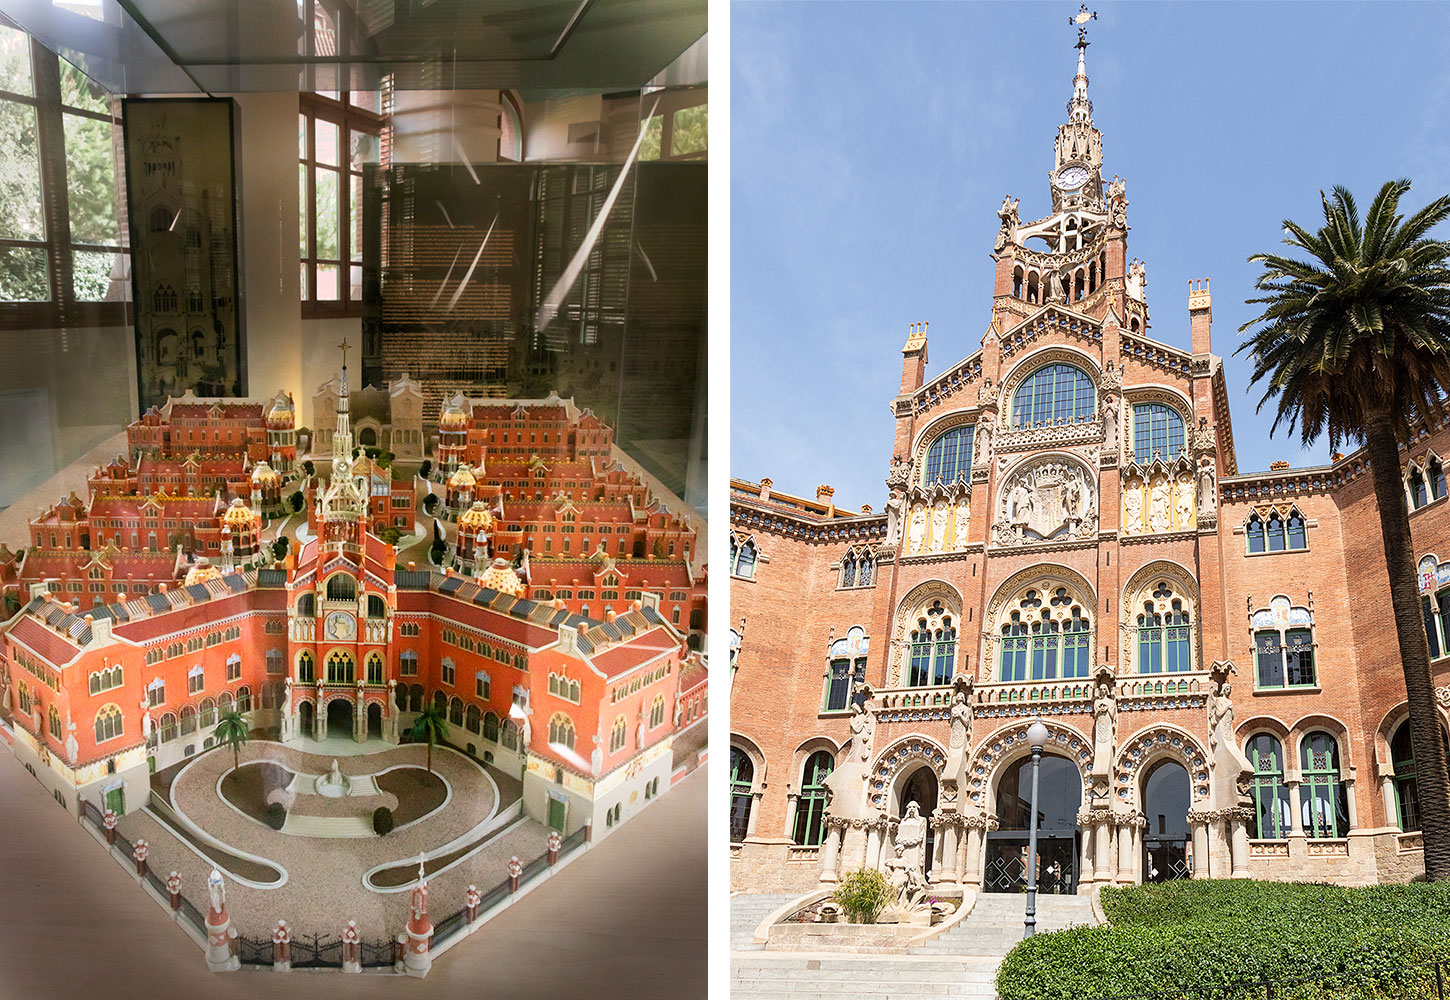 Come inside Barcelona's most beautiful hospital